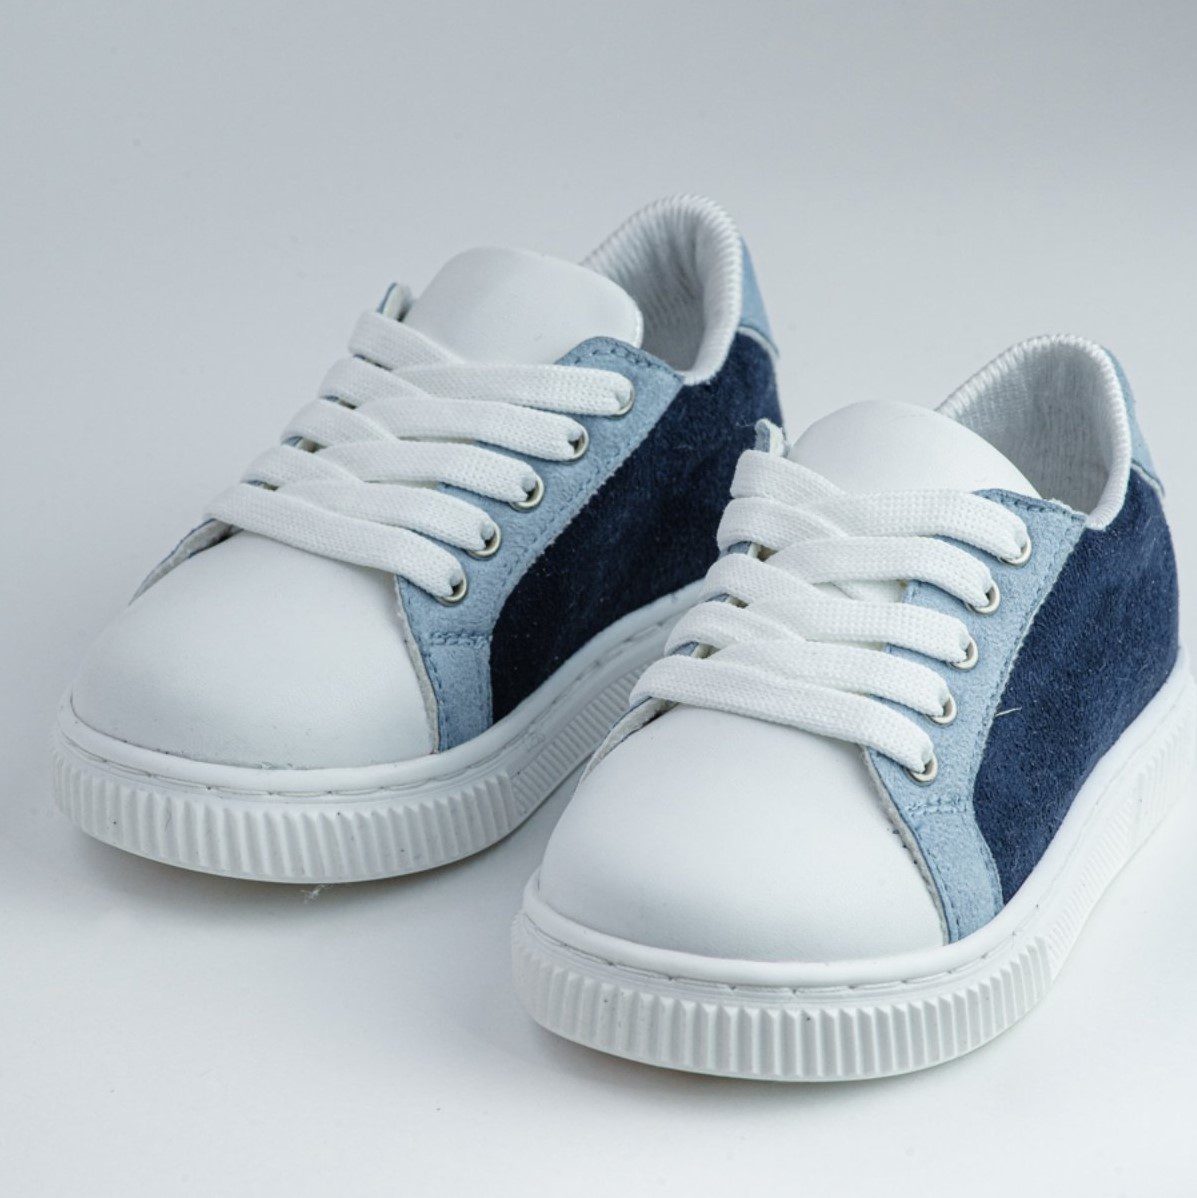 Βαπτιστικά παπούτσια τύπου sneakers, σε άσπρο με γαλάζιο και σκούρο μπλε